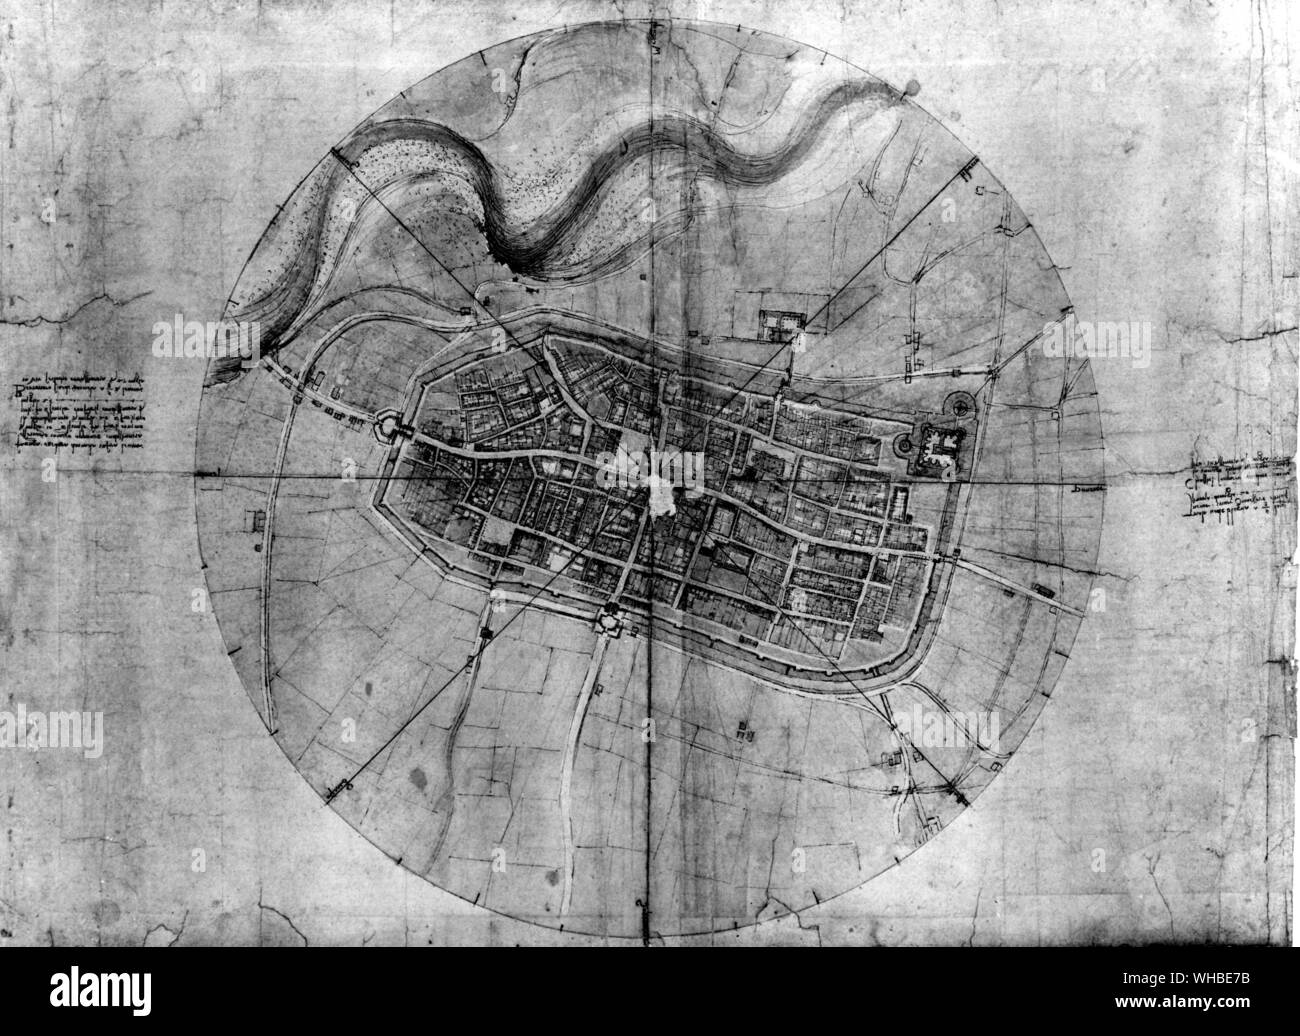 Leonardo da Vinci's Karte von Imola, die Stadt von Caterina Sforza geregelt. Leonardos Notizen auf beiden Seiten des Kreises finden Sie die Geographie von Bologna und anderen Städten, in denen Cesare Borgia eine militärische Interesse hatte Stockfoto